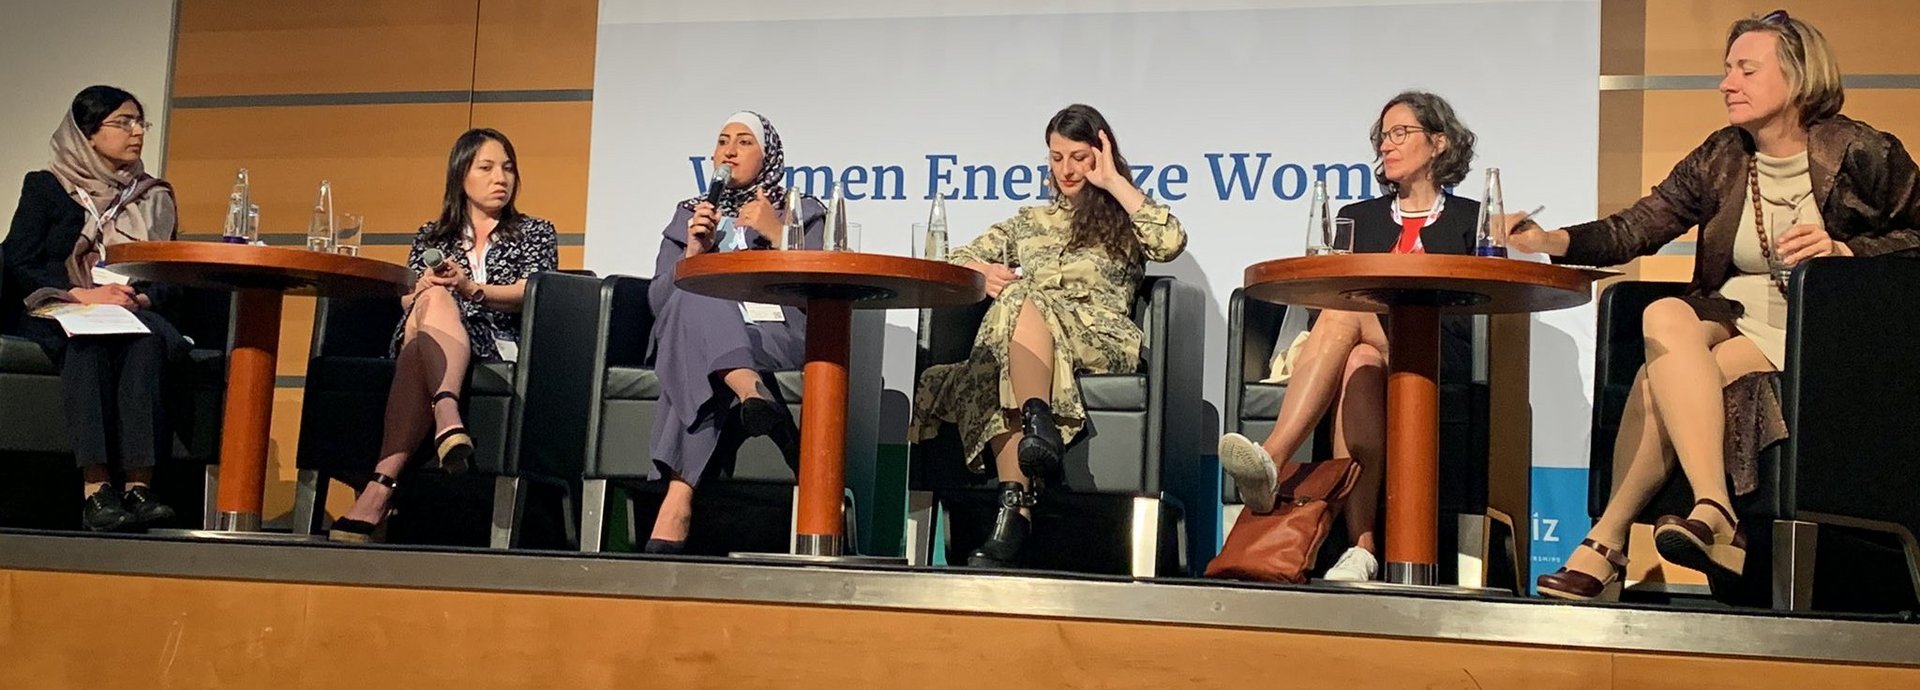 Women Energize Women Panel mit mehreren Frauen auf einer Bühne